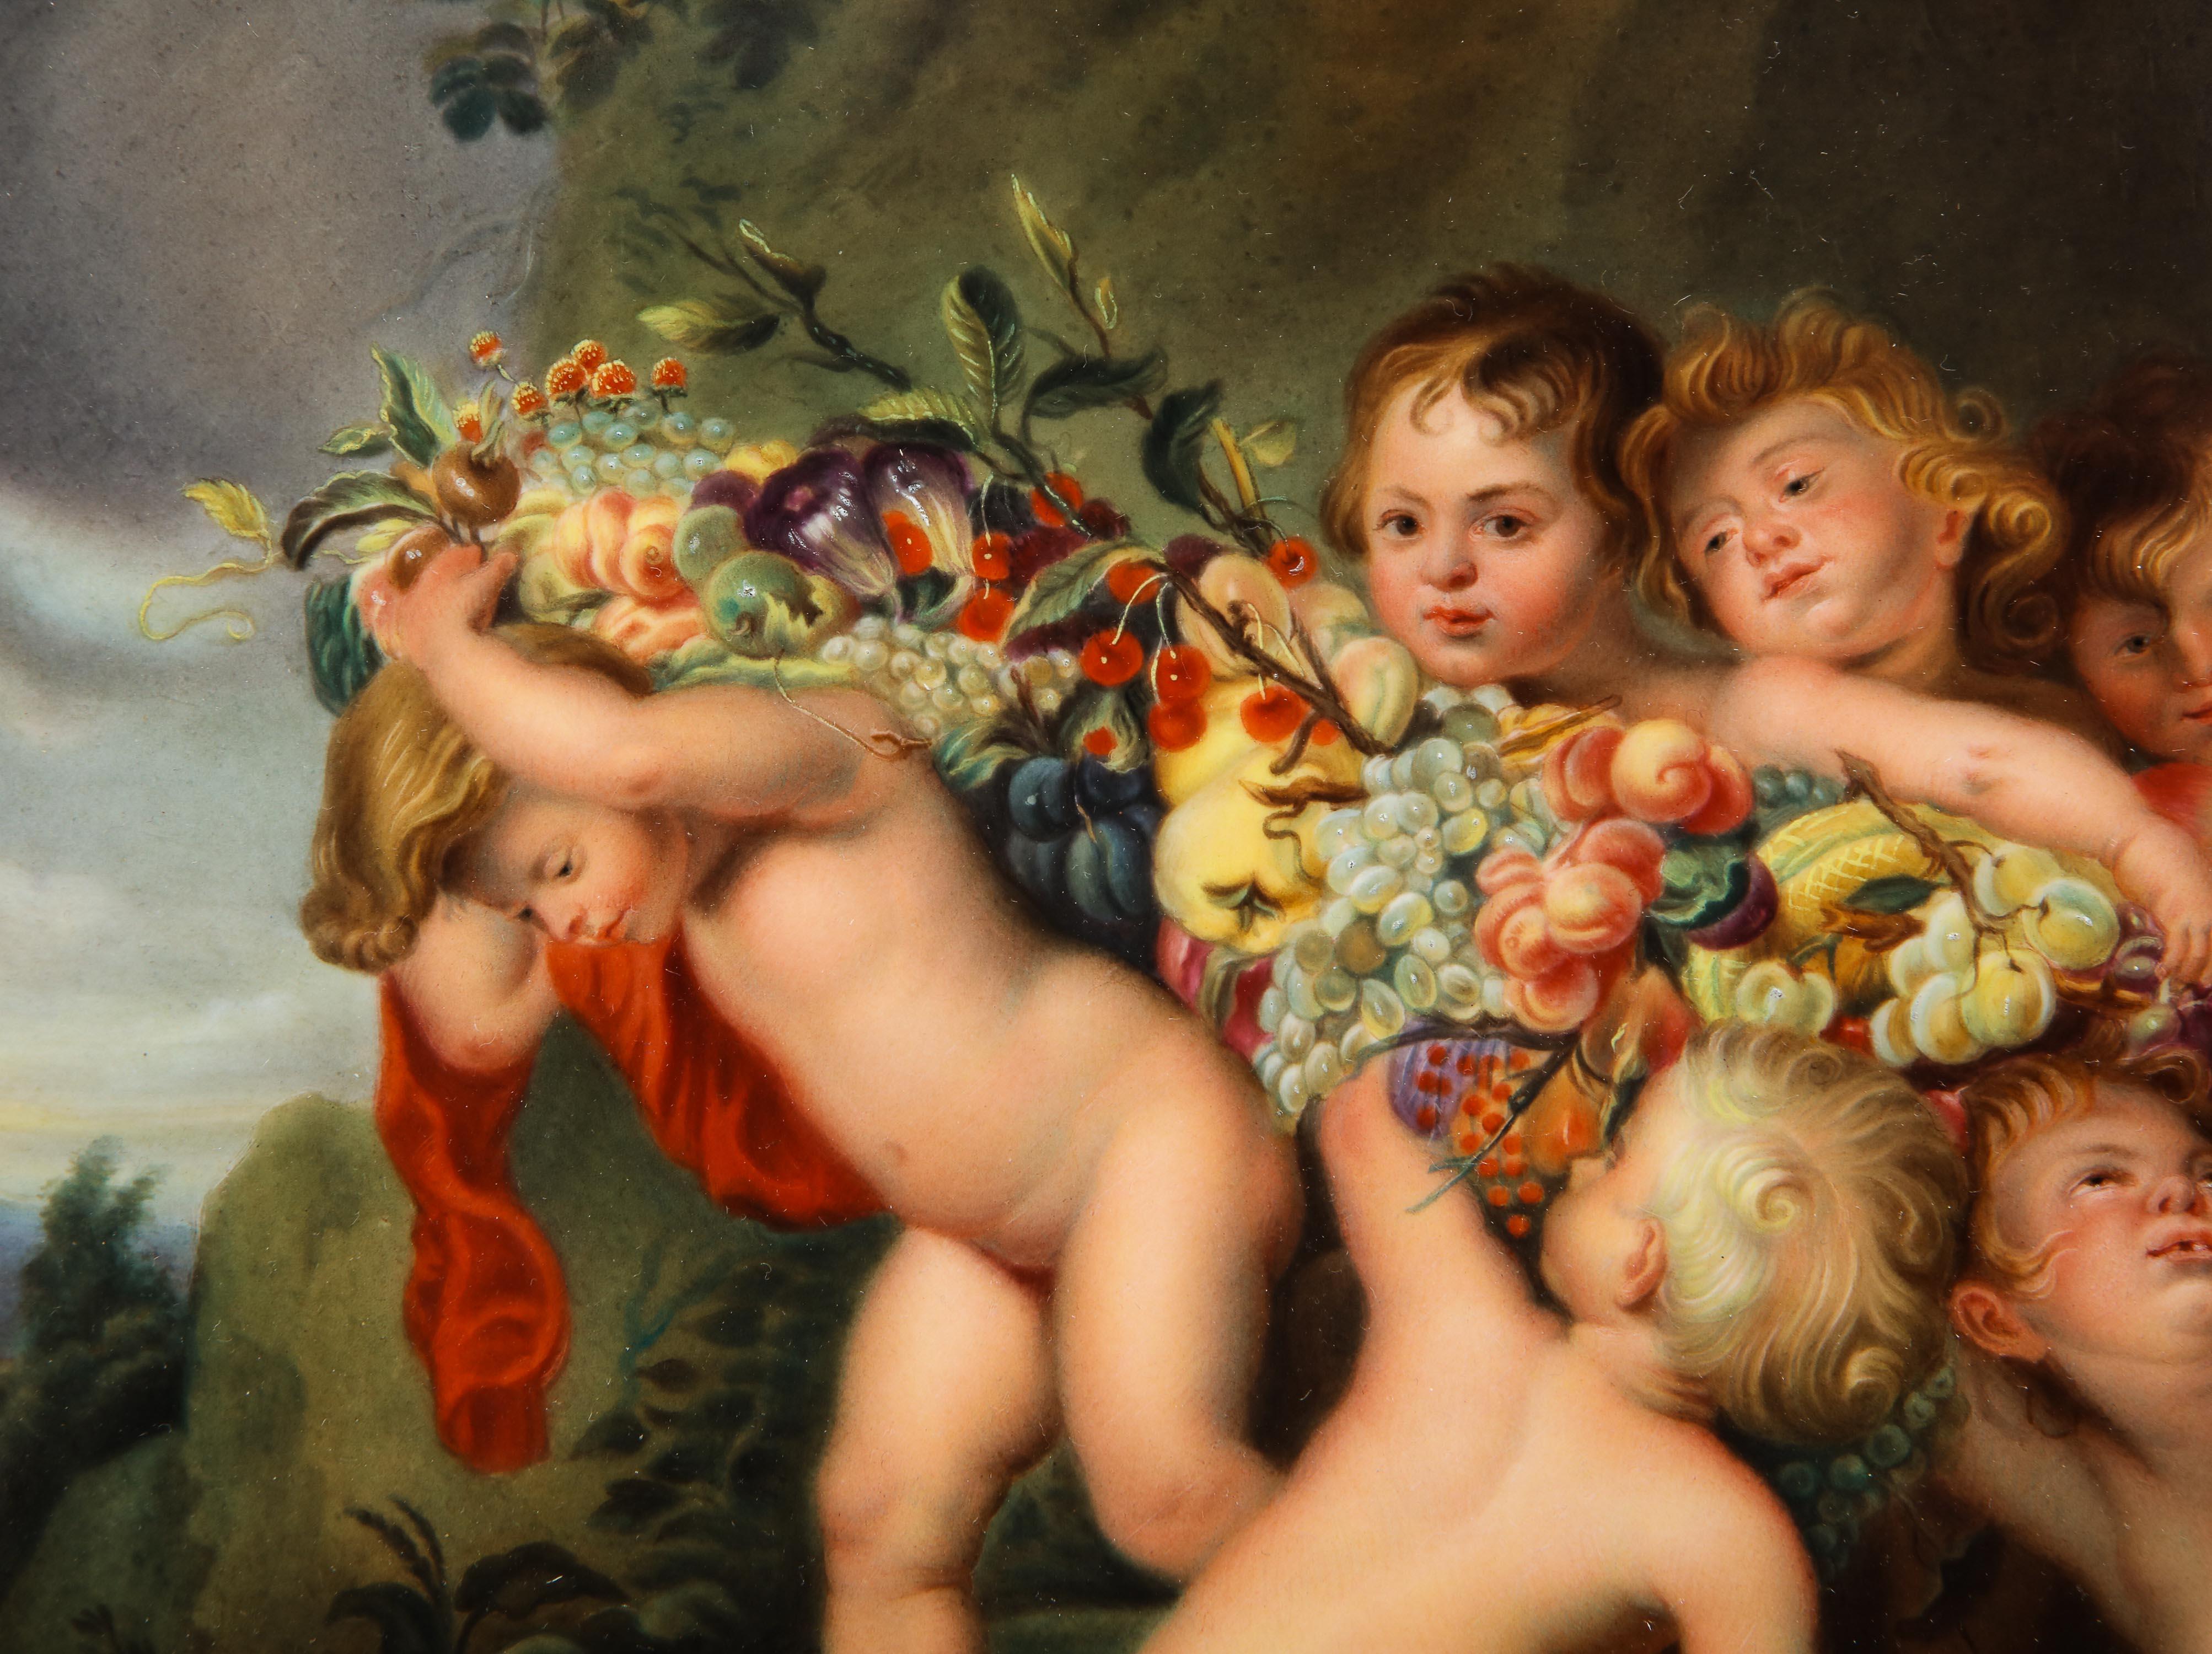 rubens paintings cherubs